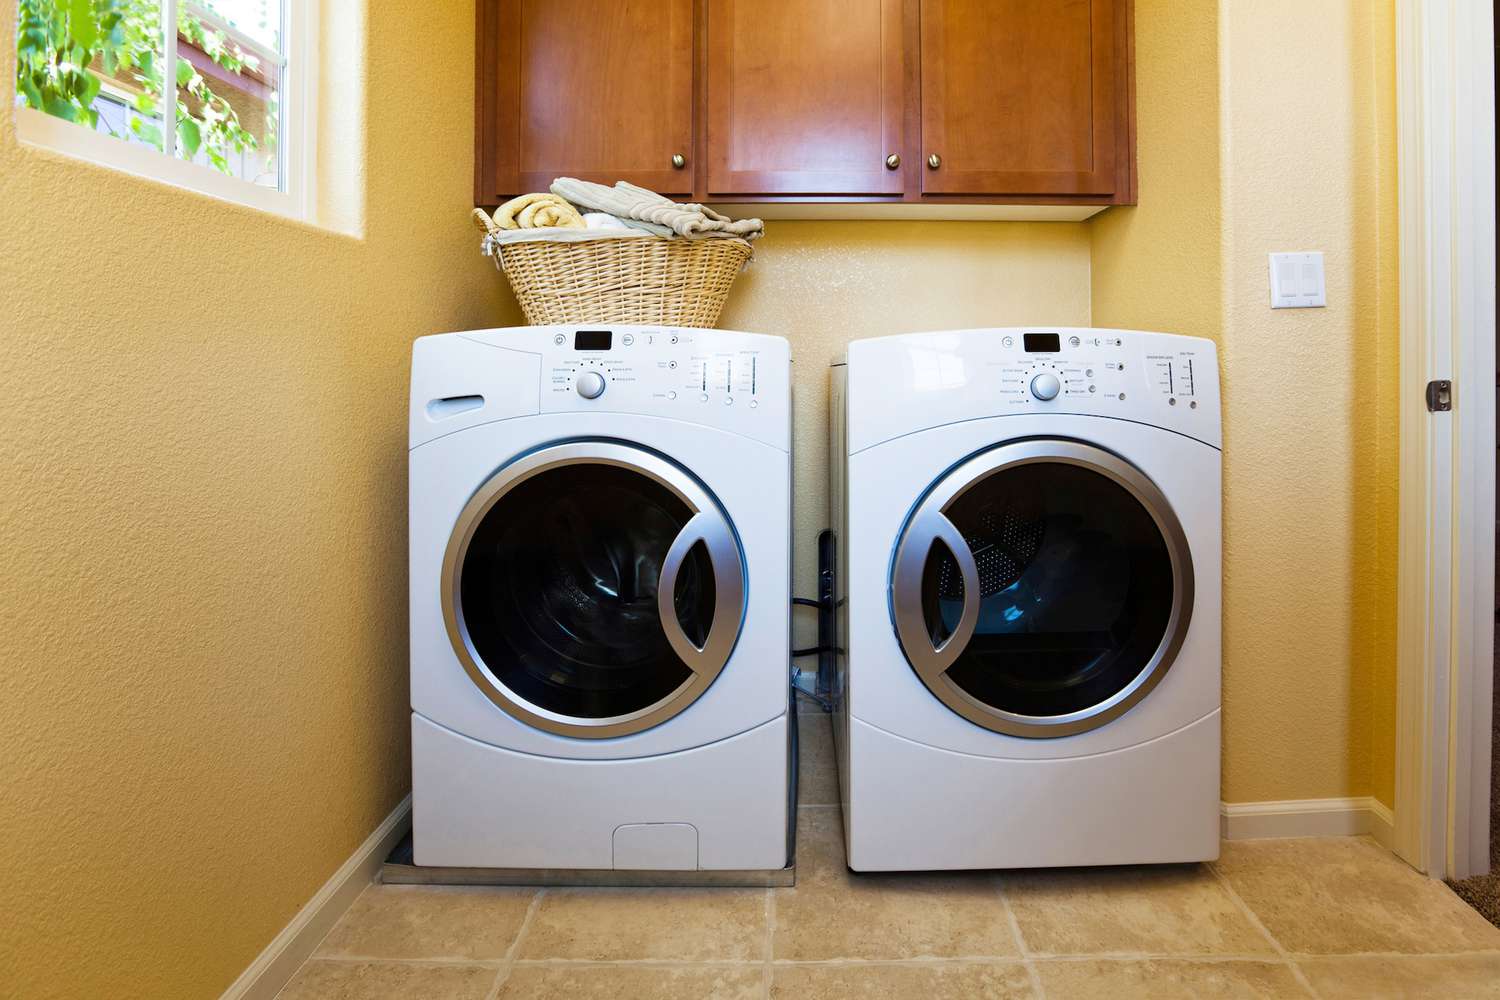 Lavadora e secadora modernas brancas na lavanderia da casa.